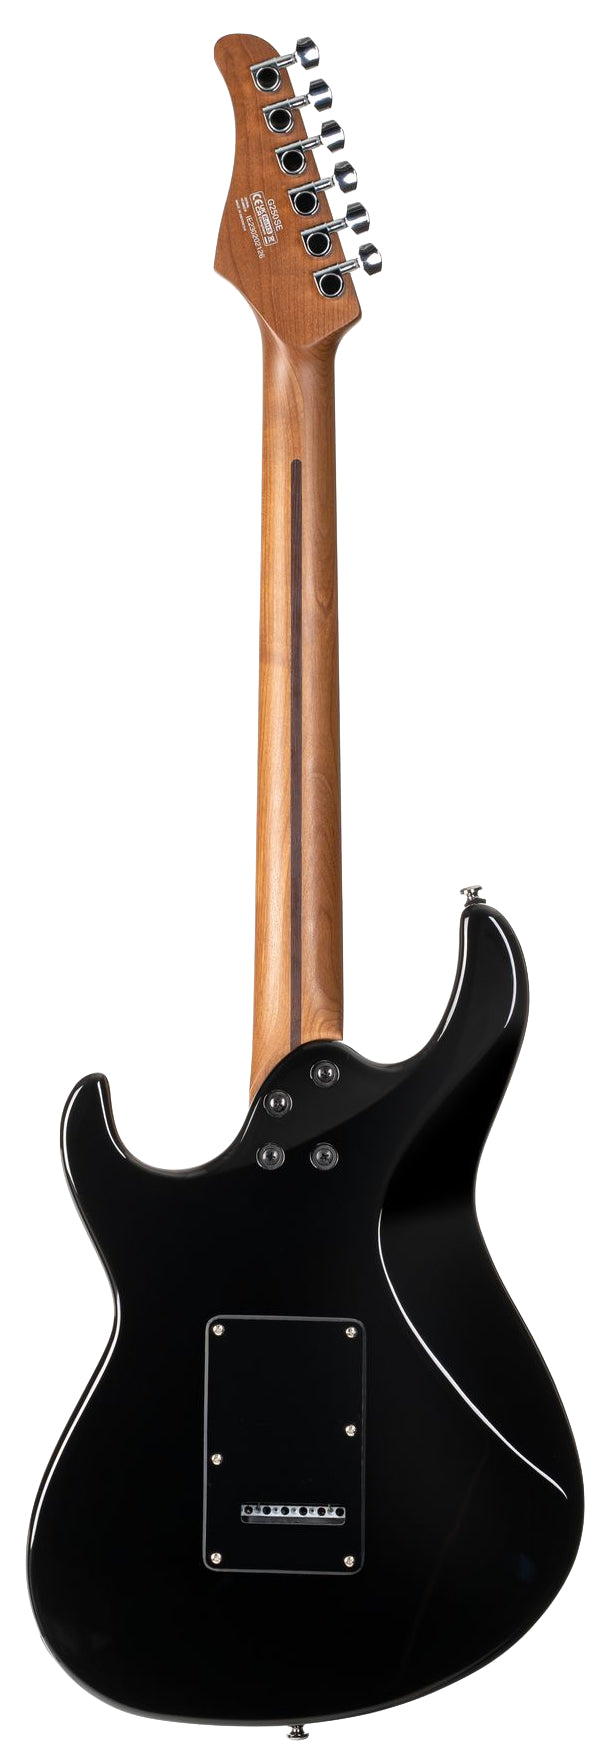 Cort G250 SE Black, Electric Guitar for sale at Richards Guitars.